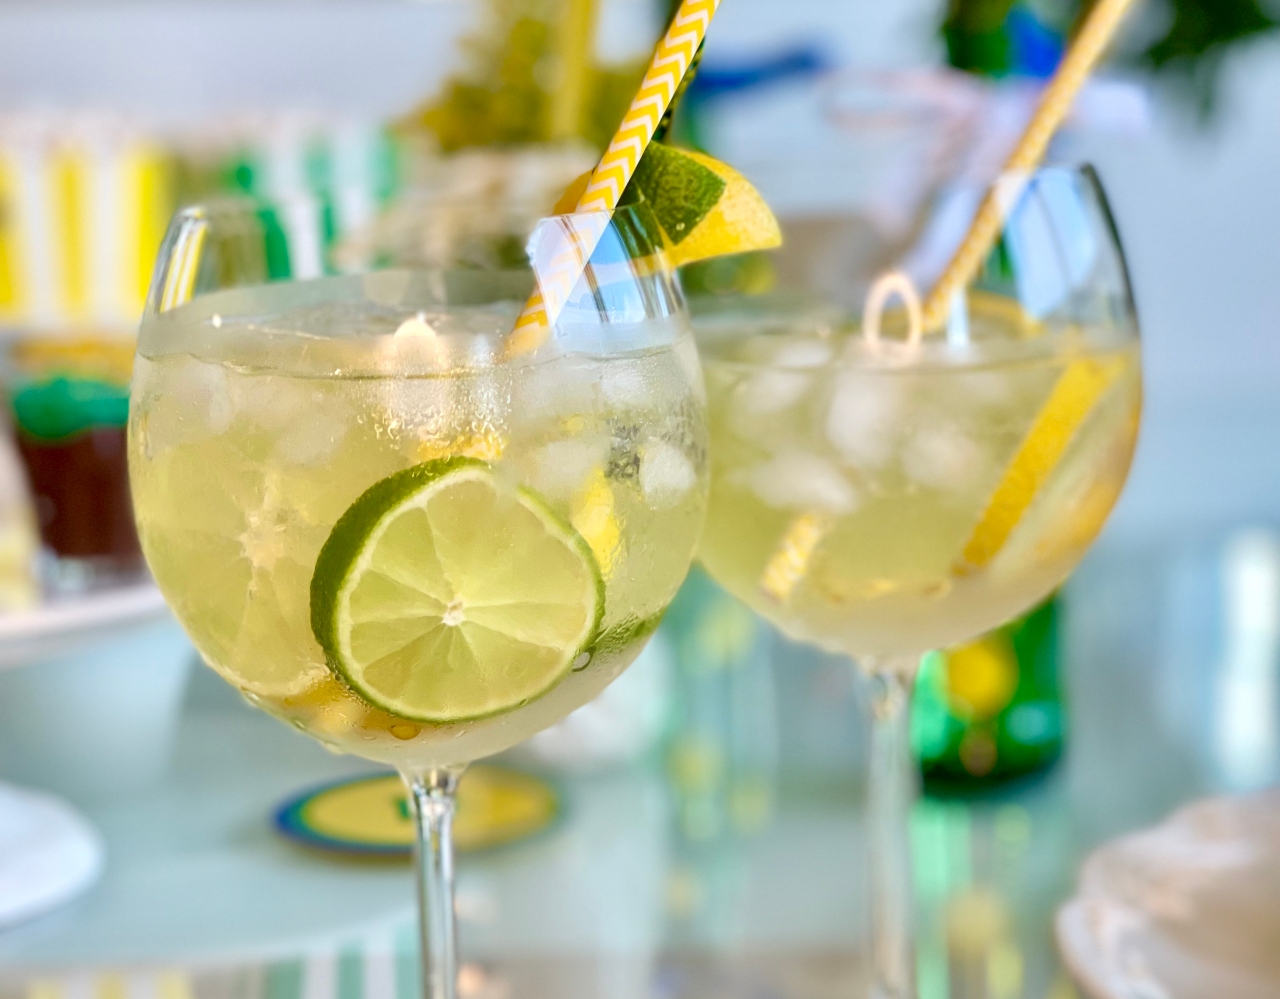 Duas taças de gin com bebida e rodelas de limão taiti e siciliano dentro, além de um canudo listrado em amarelo e branco